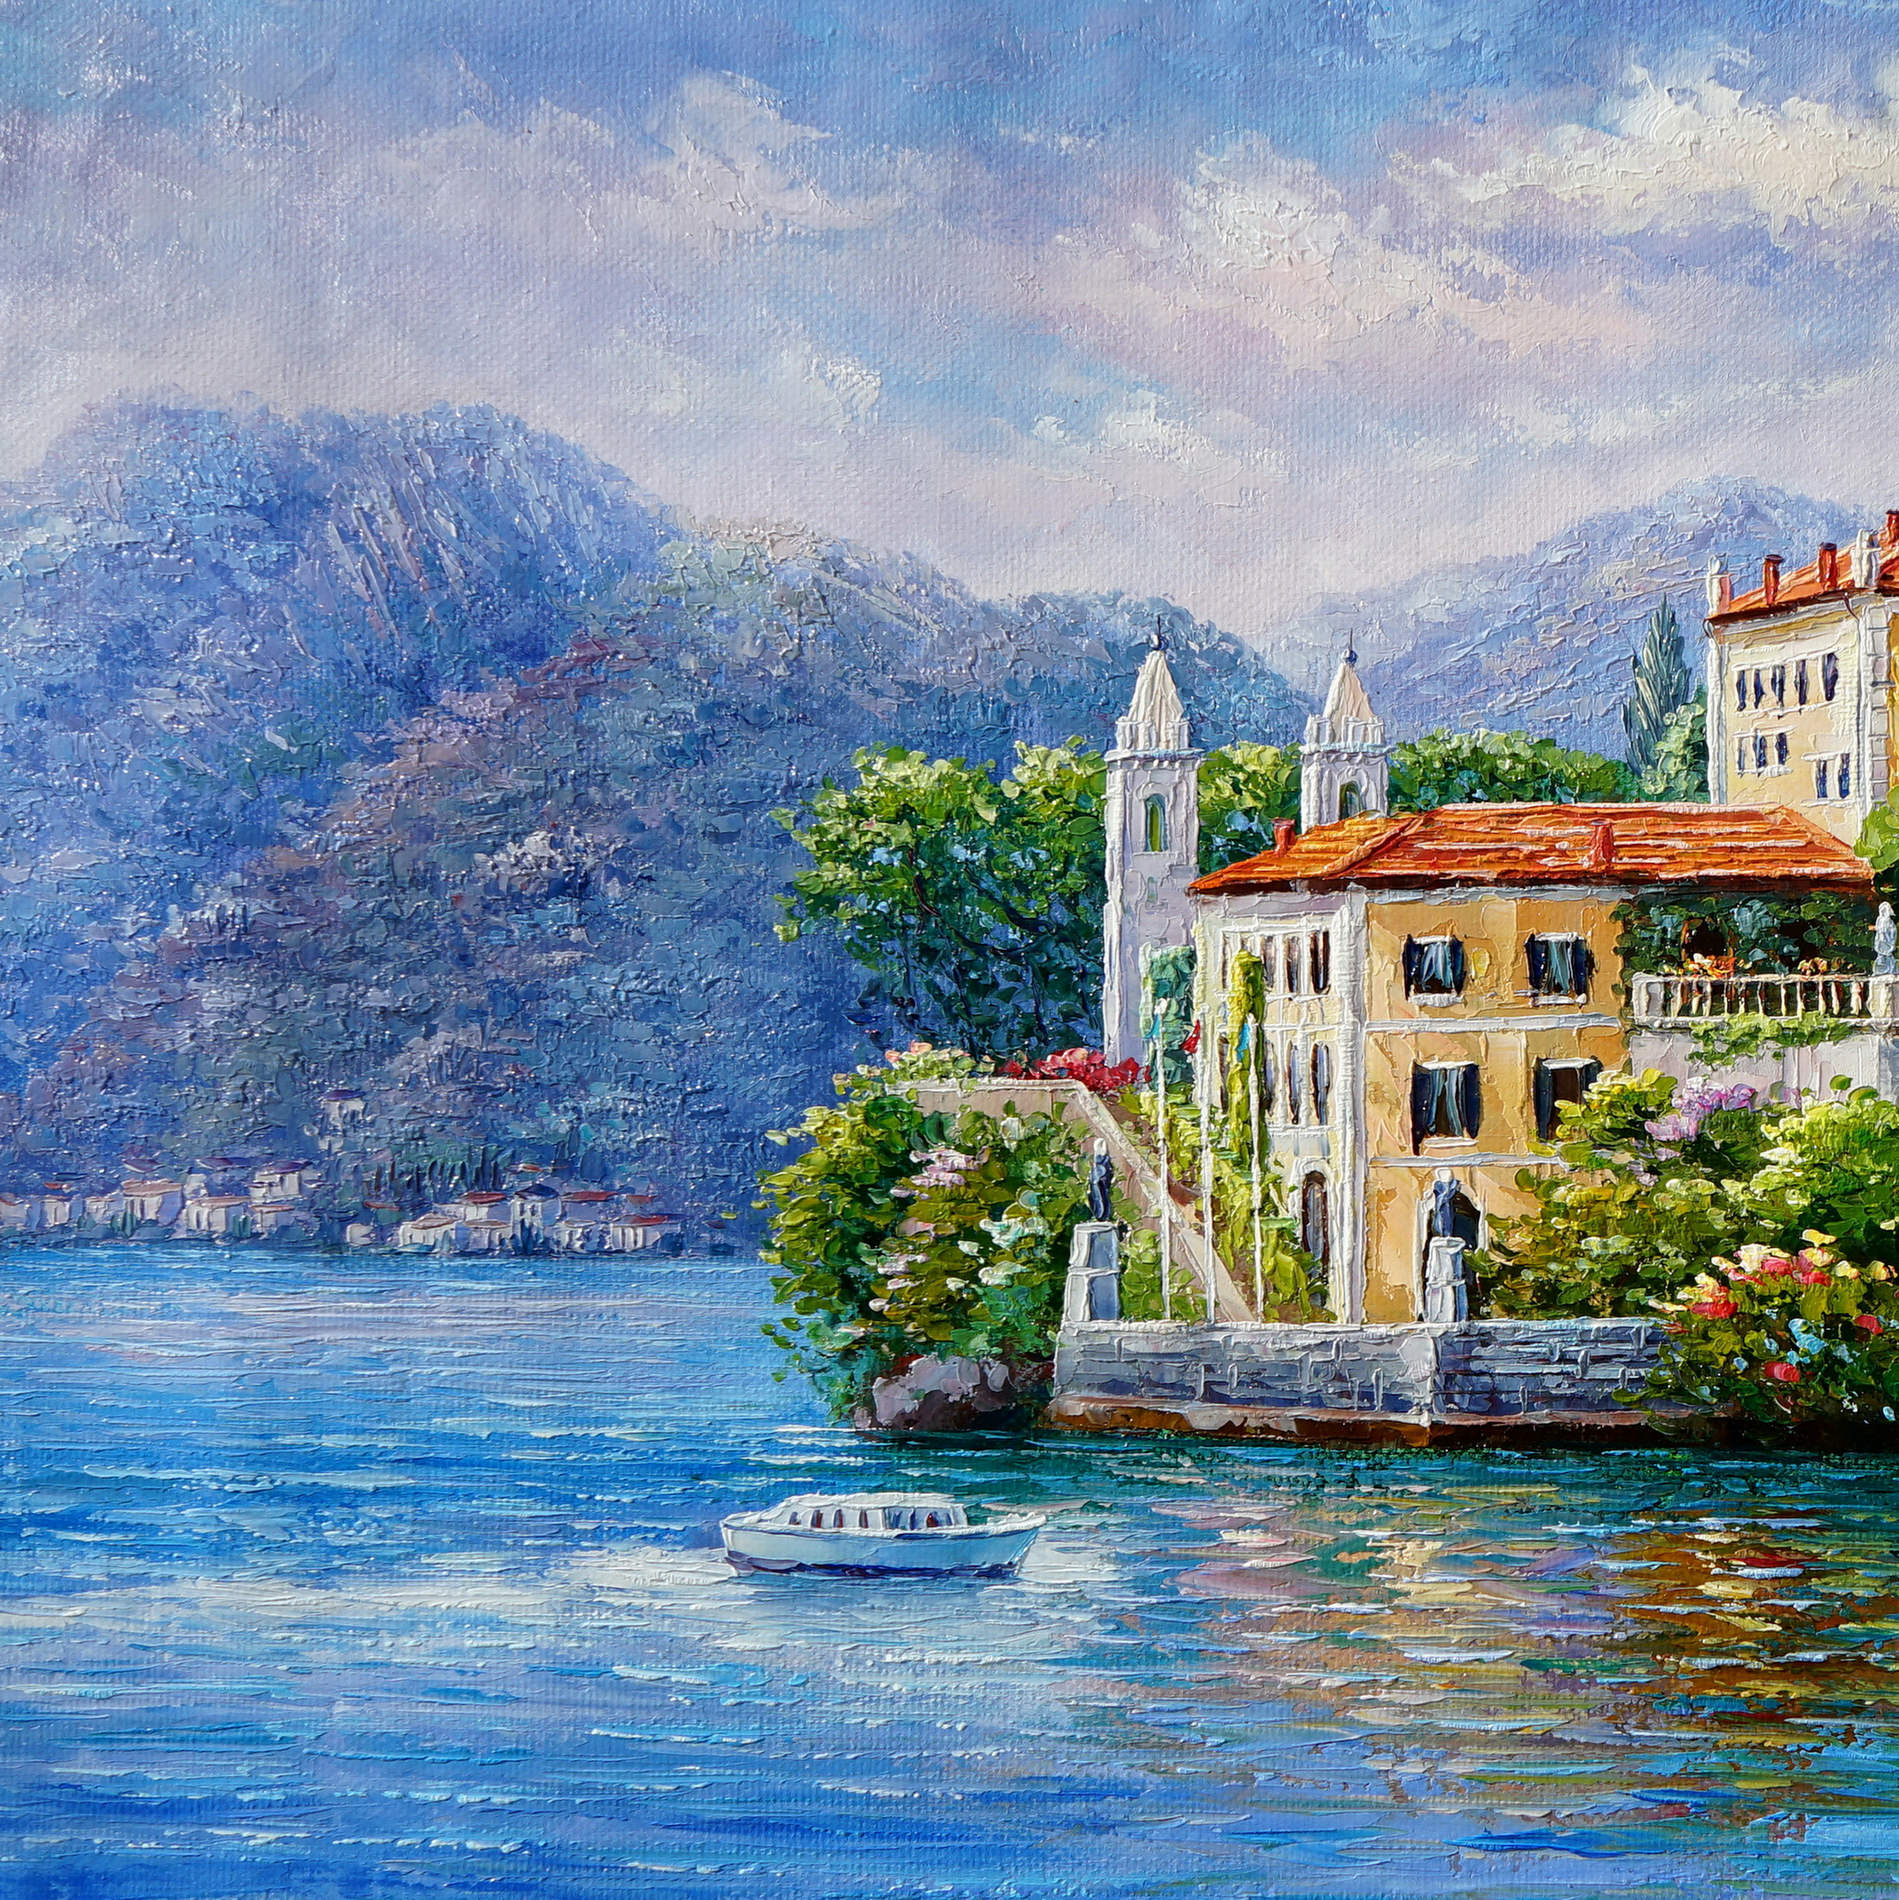 Dipinto a mano Villa Balbianello Lago di Como 60x120cm